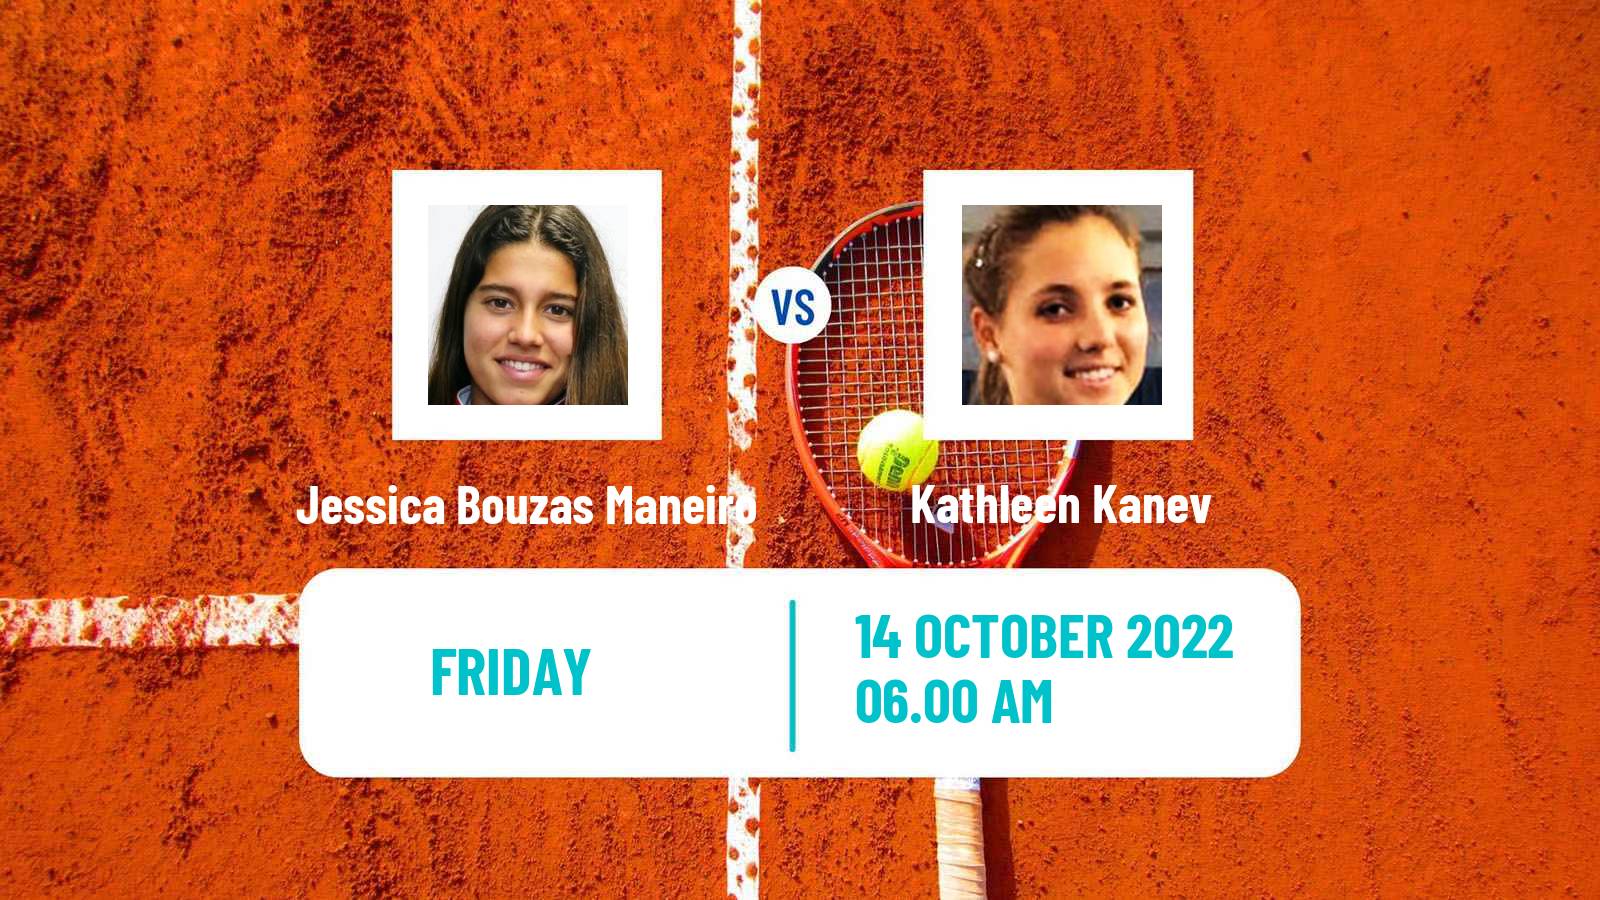 Tennis ITF Tournaments Jessica Bouzas Maneiro - Kathleen Kanev